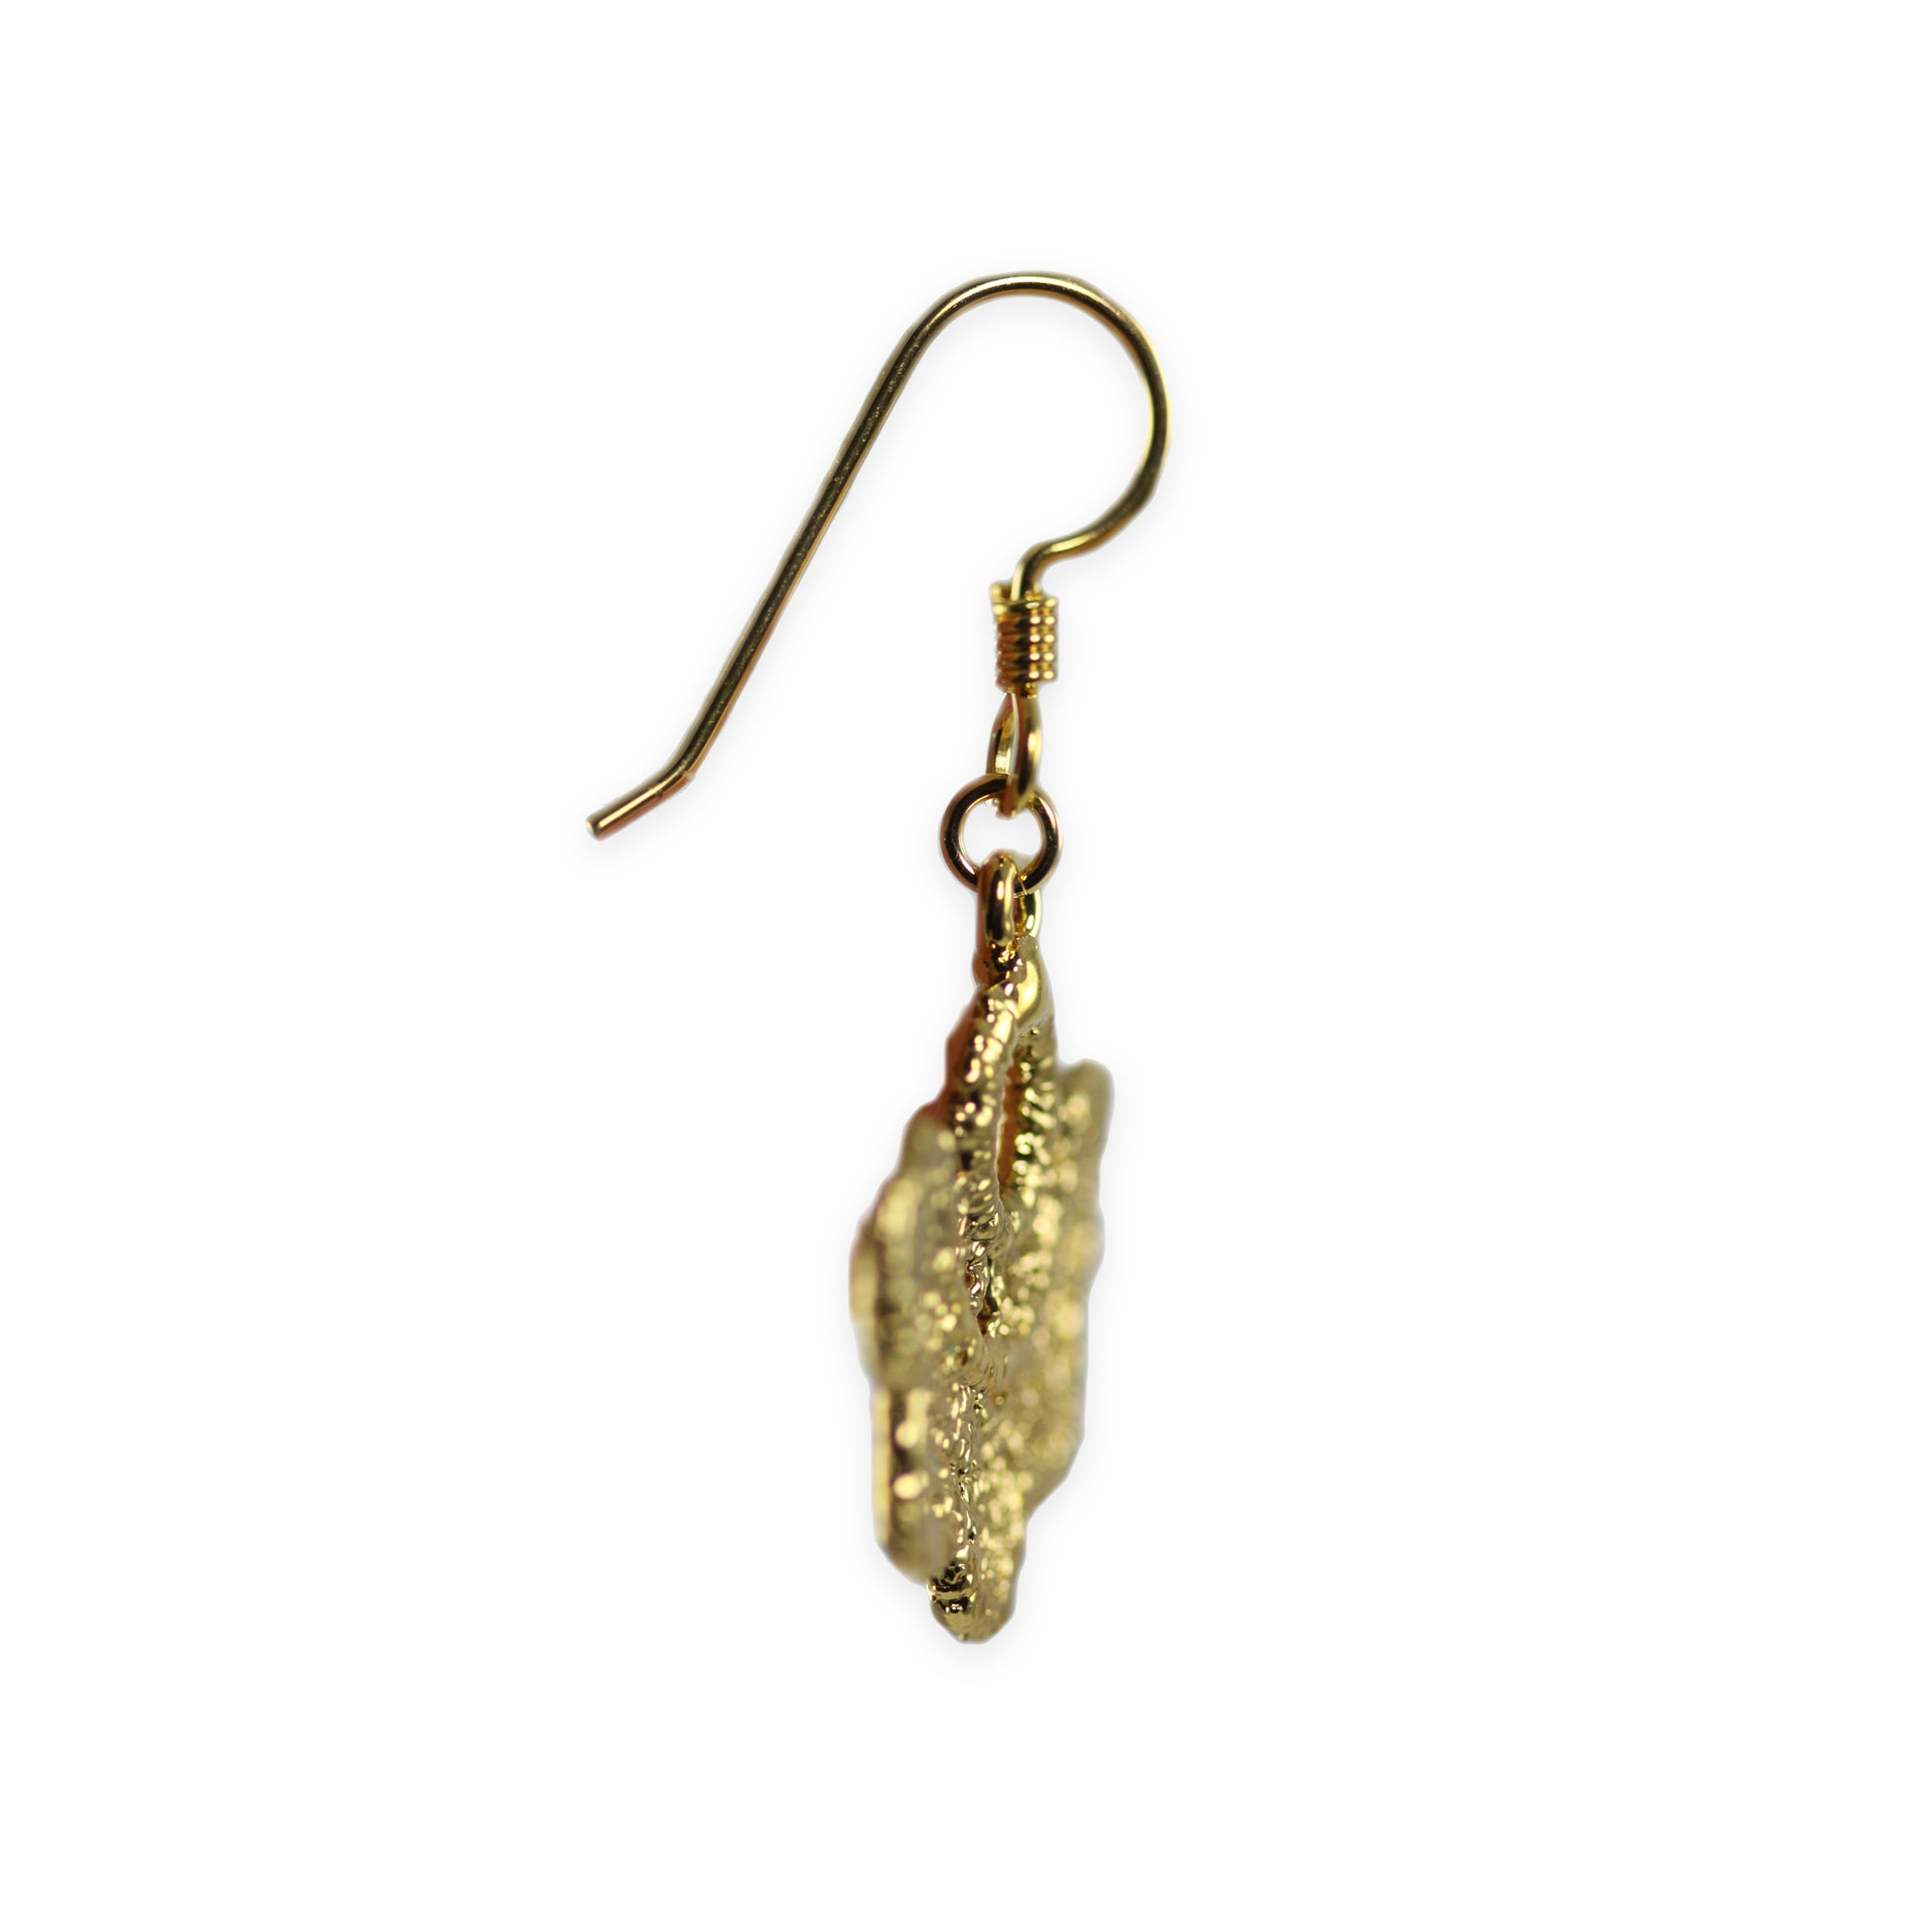 Flower lace earrings on French hooks in 24k gold.